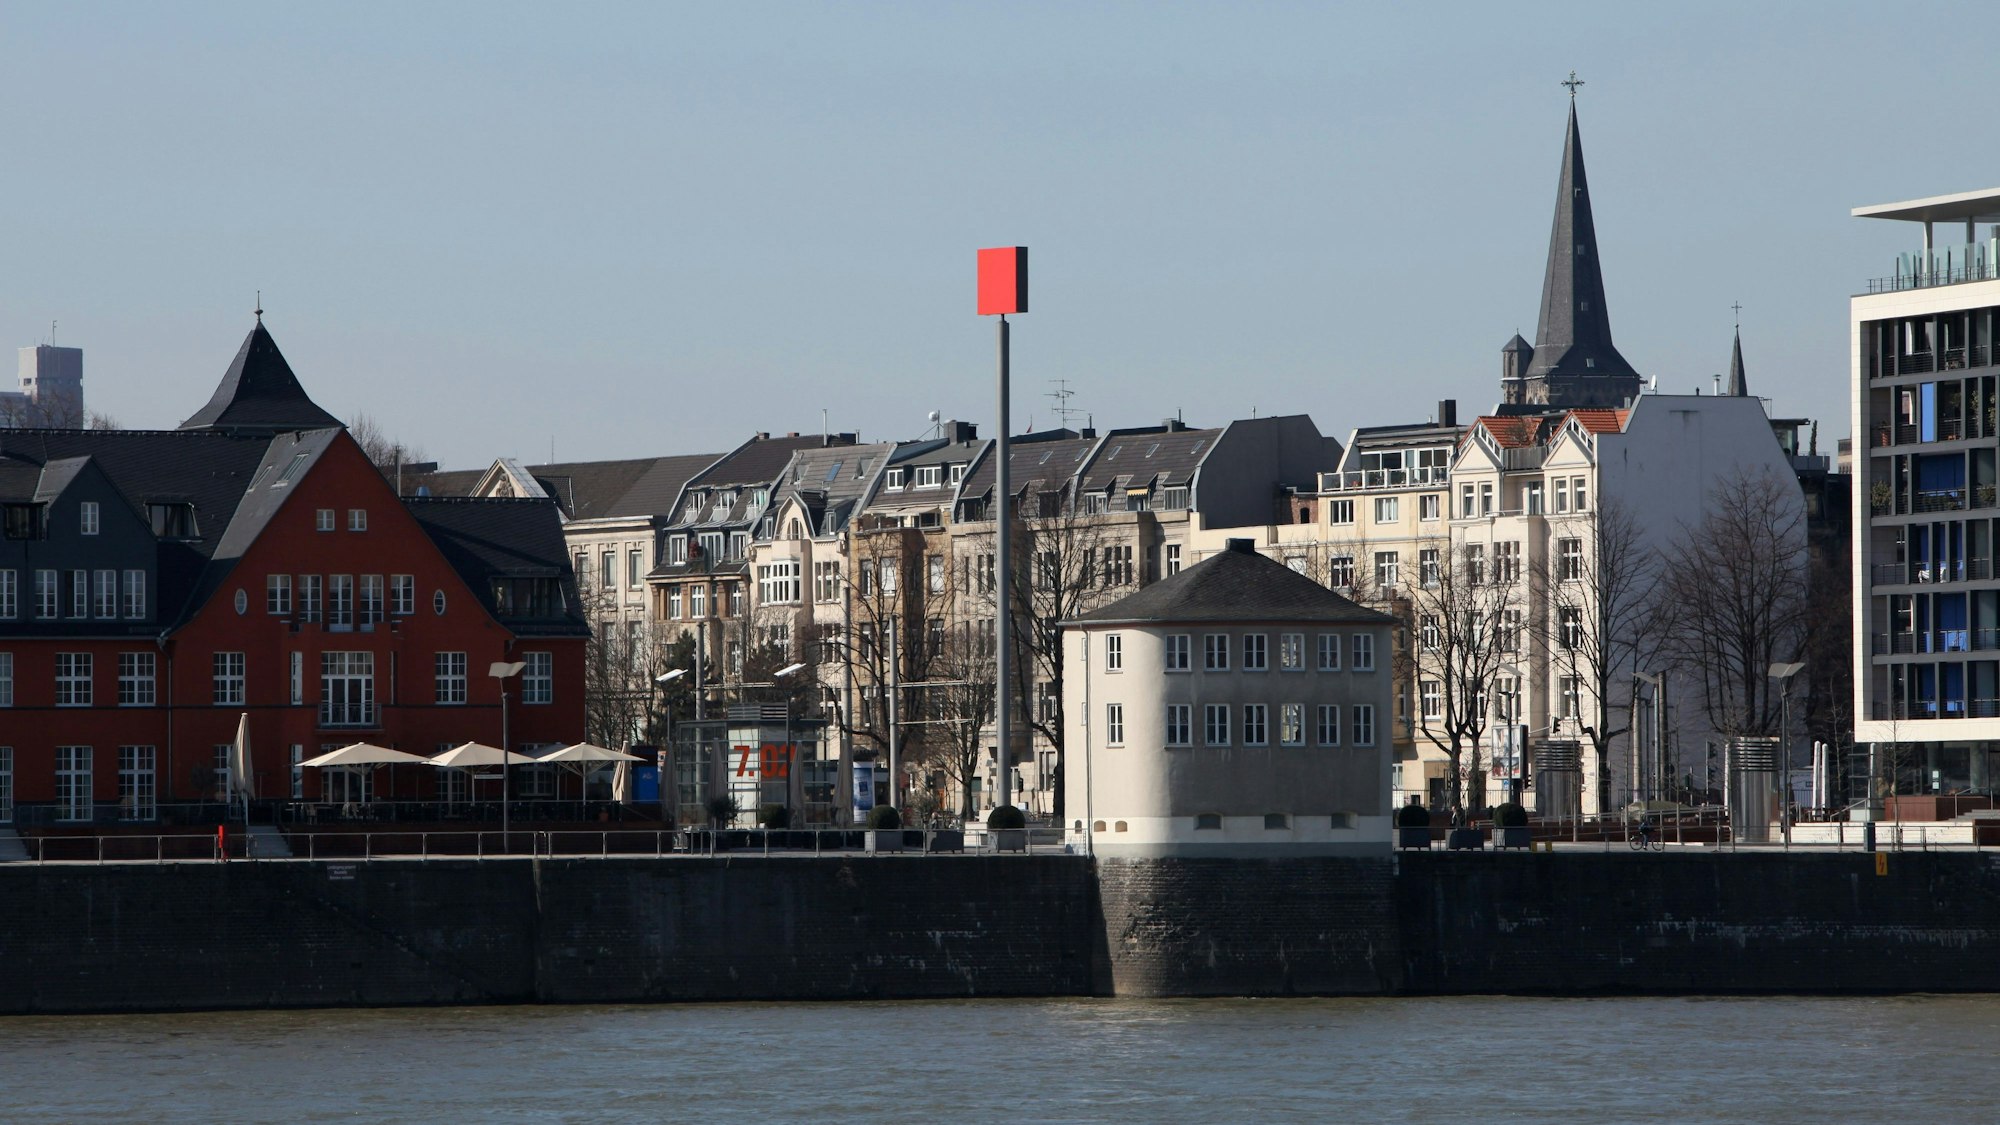 Ein rotes Quadrat auf einer Stele steht vor der Silhouette der Häuser am Rheinauhafen.